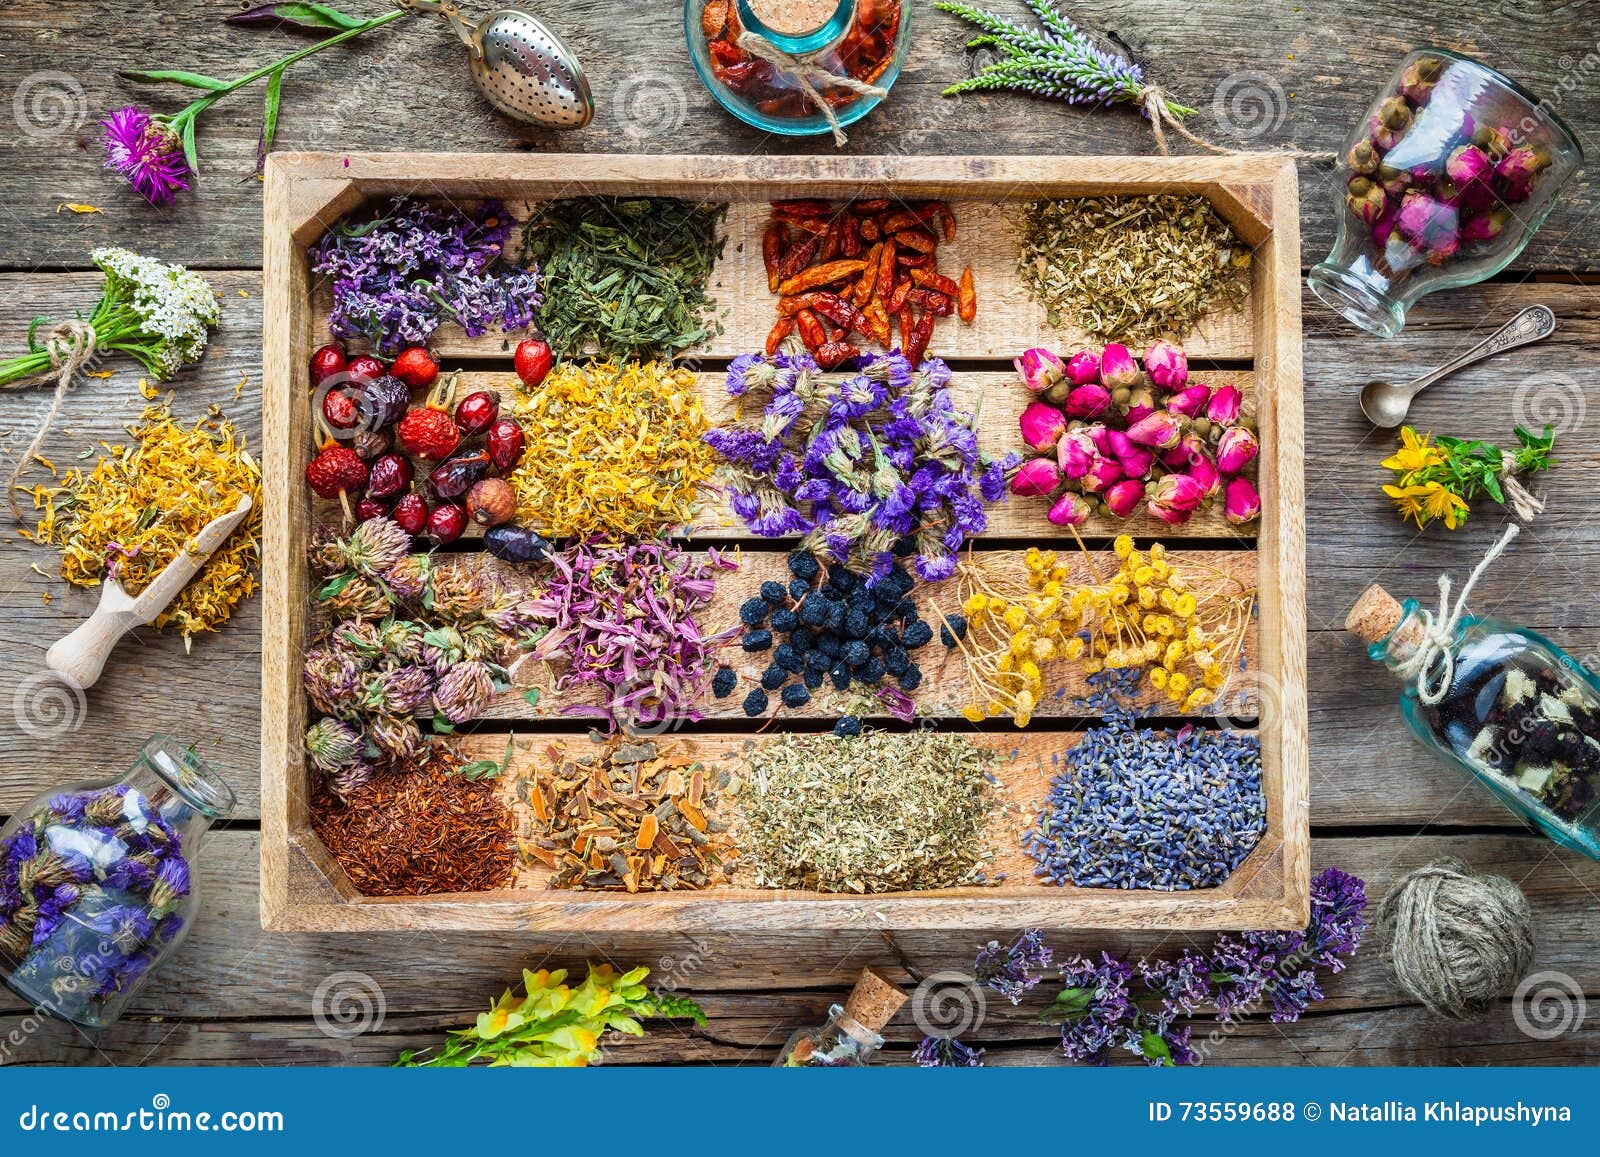 healing herbs in wooden box, herbal medicine